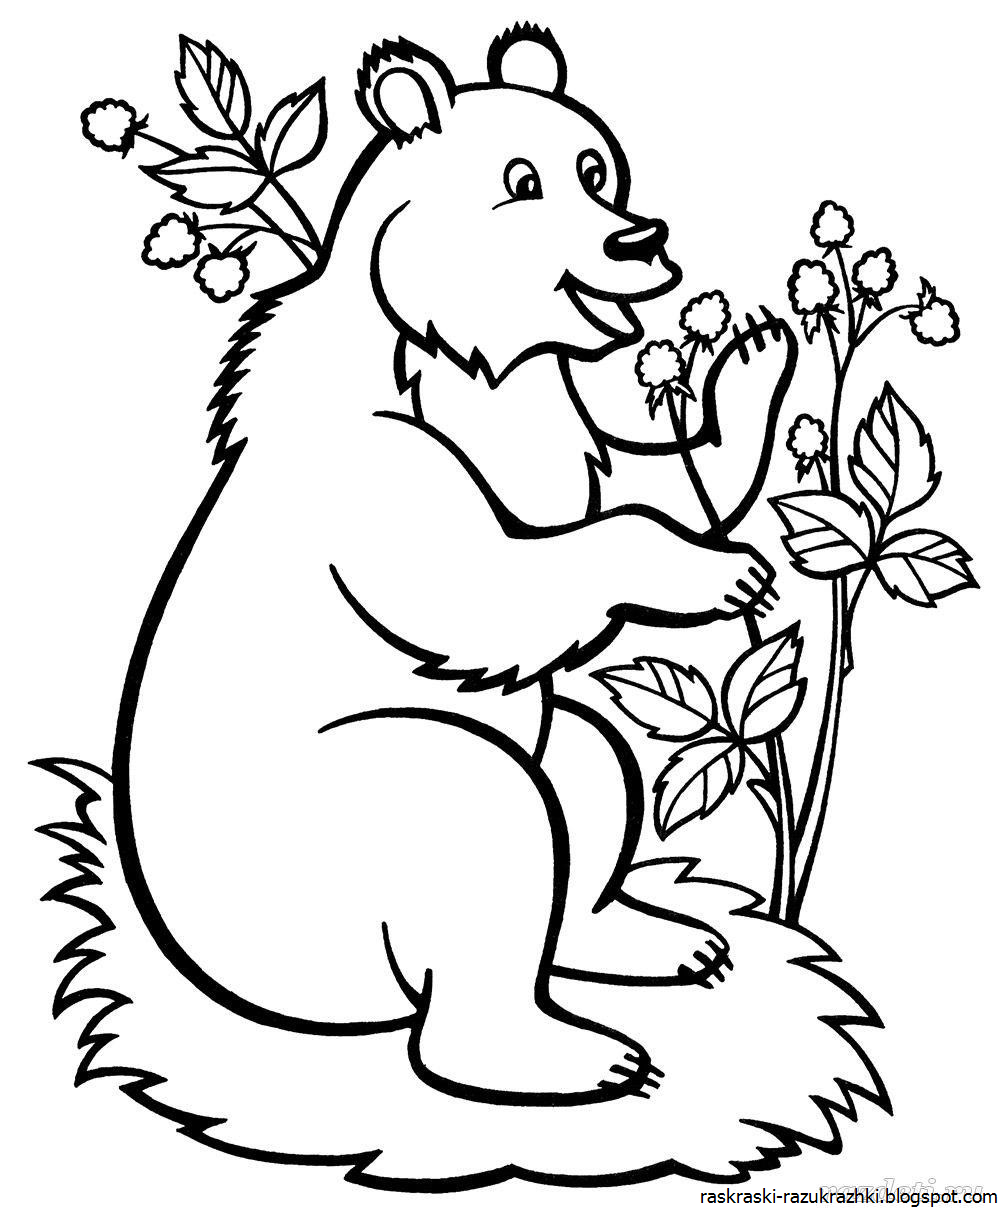 Раскраска Маша и медведь распечатать формат А4